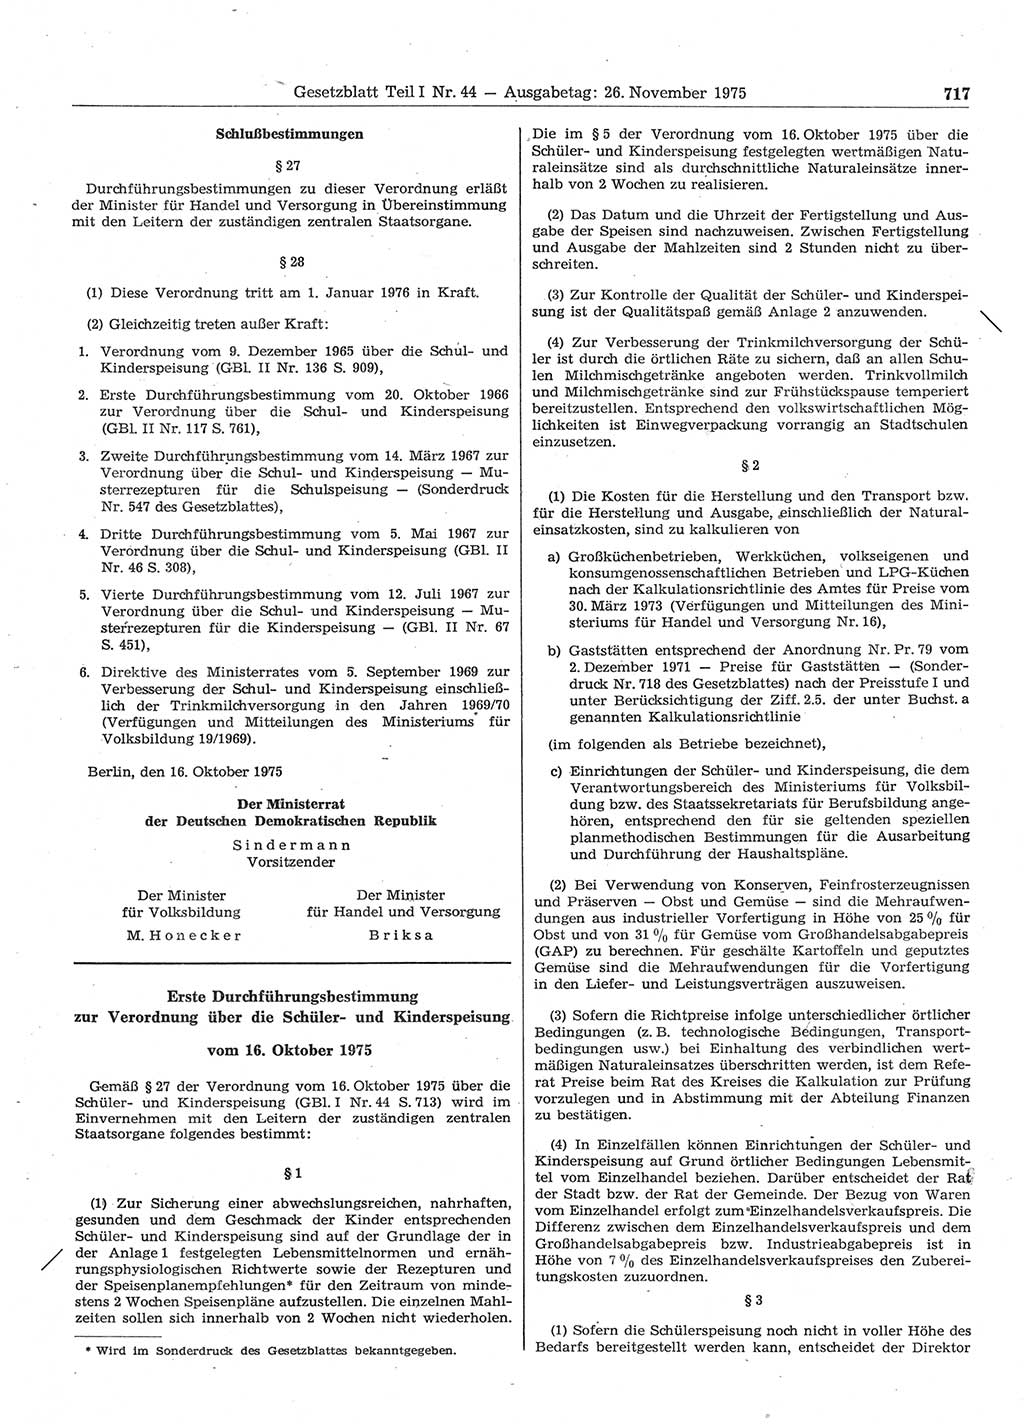 Gesetzblatt (GBl.) der Deutschen Demokratischen Republik (DDR) Teil Ⅰ 1975, Seite 717 (GBl. DDR Ⅰ 1975, S. 717)